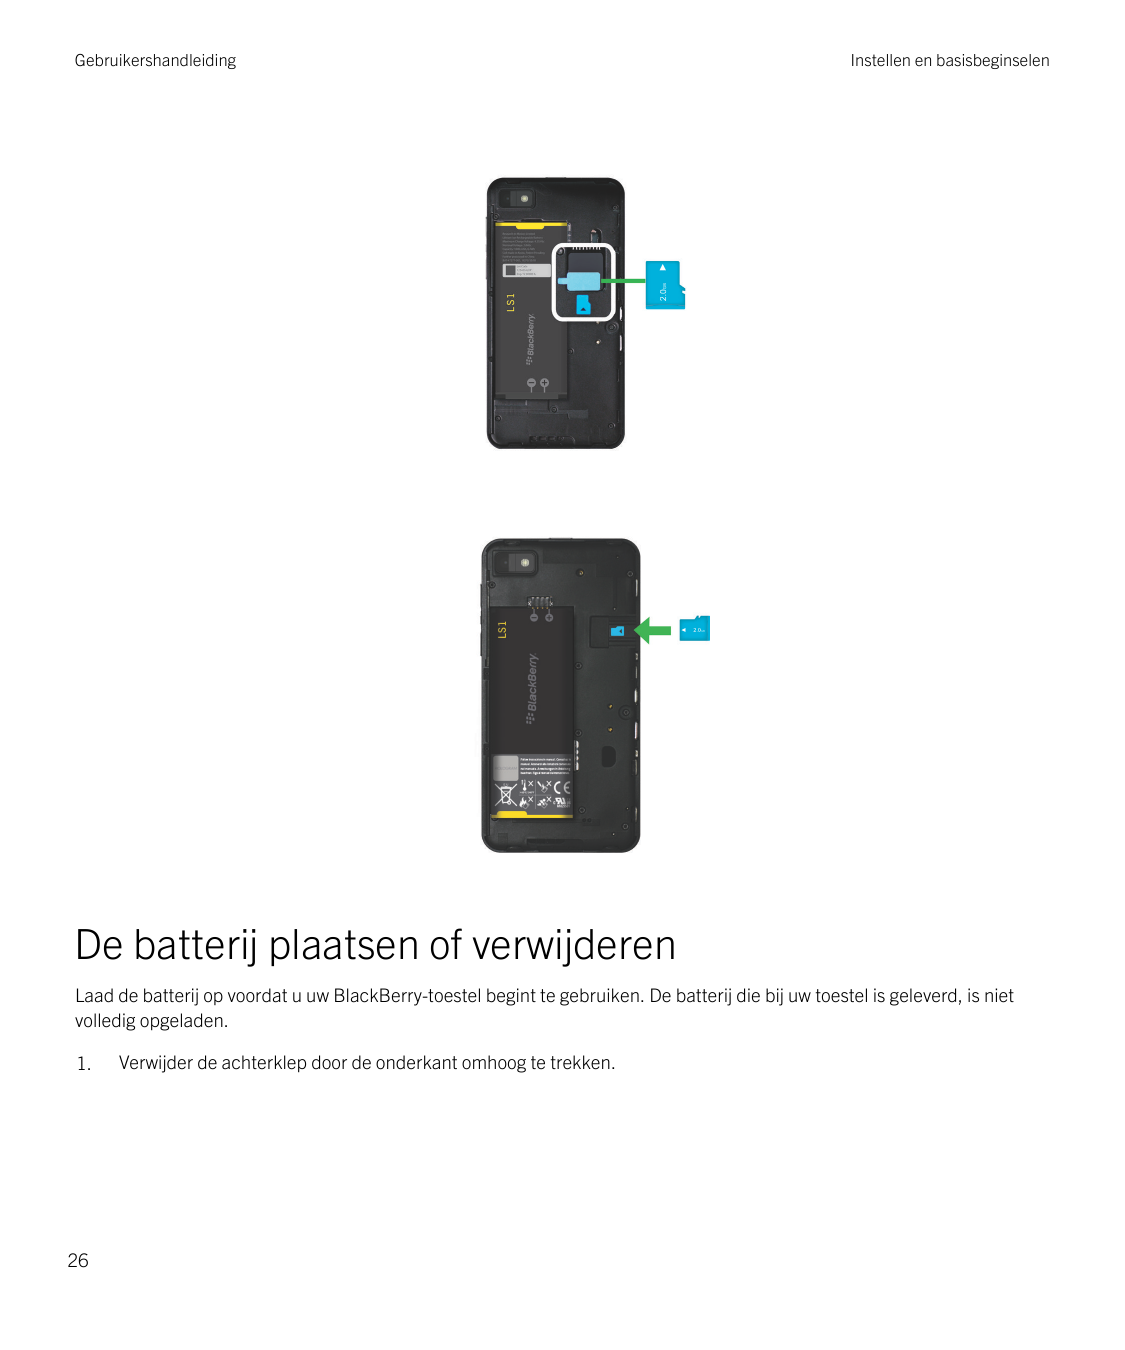 GebruikershandleidingInstellen en basisbeginselenDe batterij plaatsen of verwijderenLaad de batterij op voordat u uw BlackBerry-